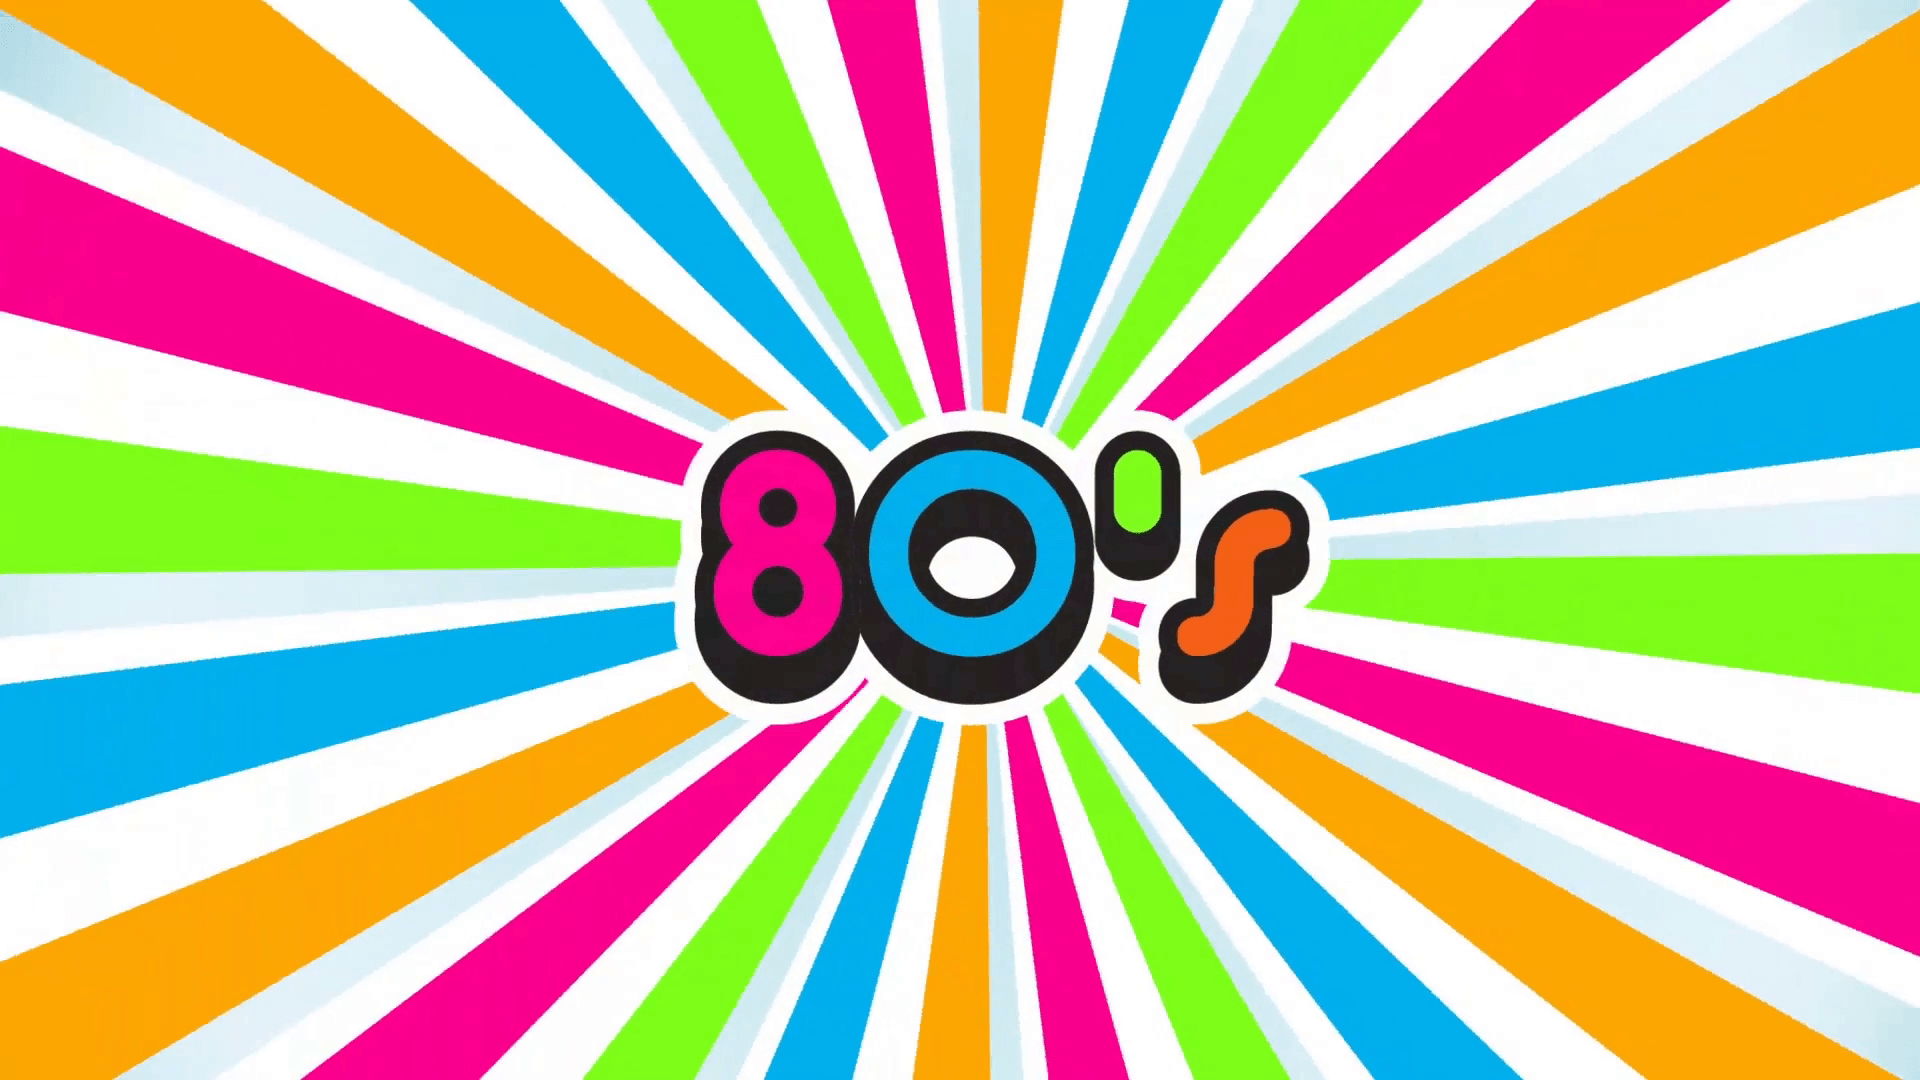 80s Logo Sunburst Background. Video Logo Animation Motion Background